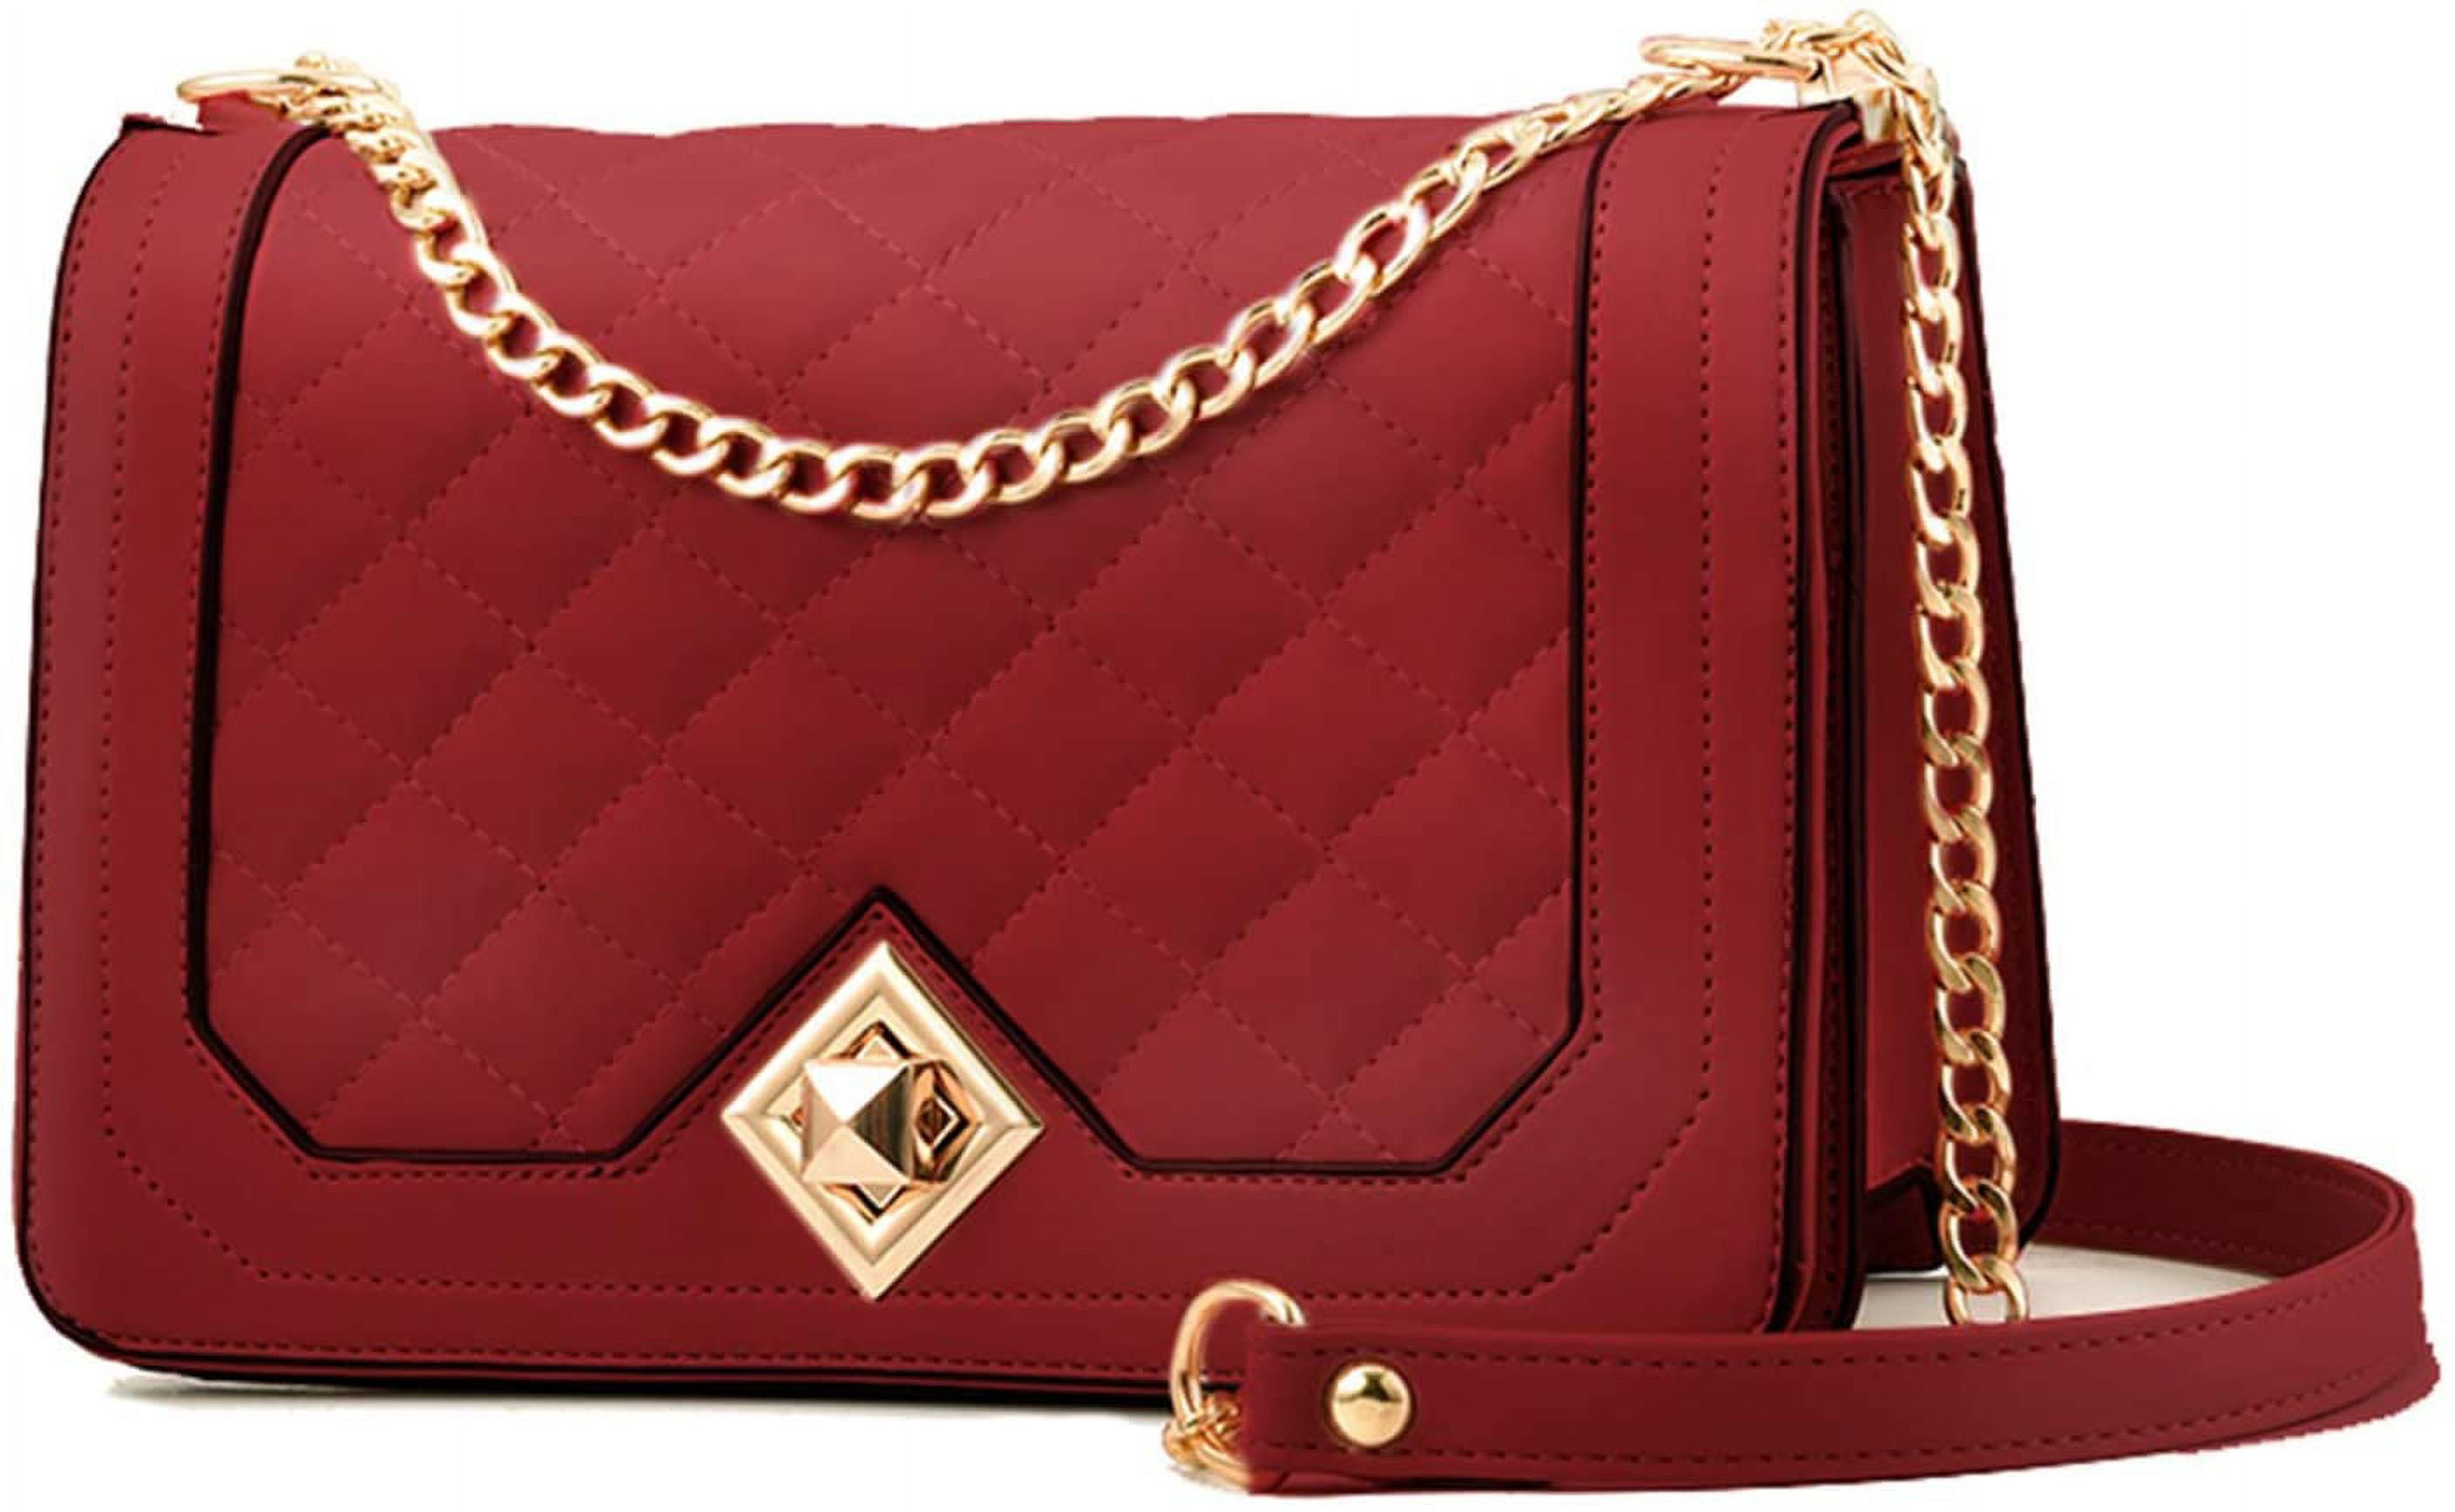 Small Red Handbag 